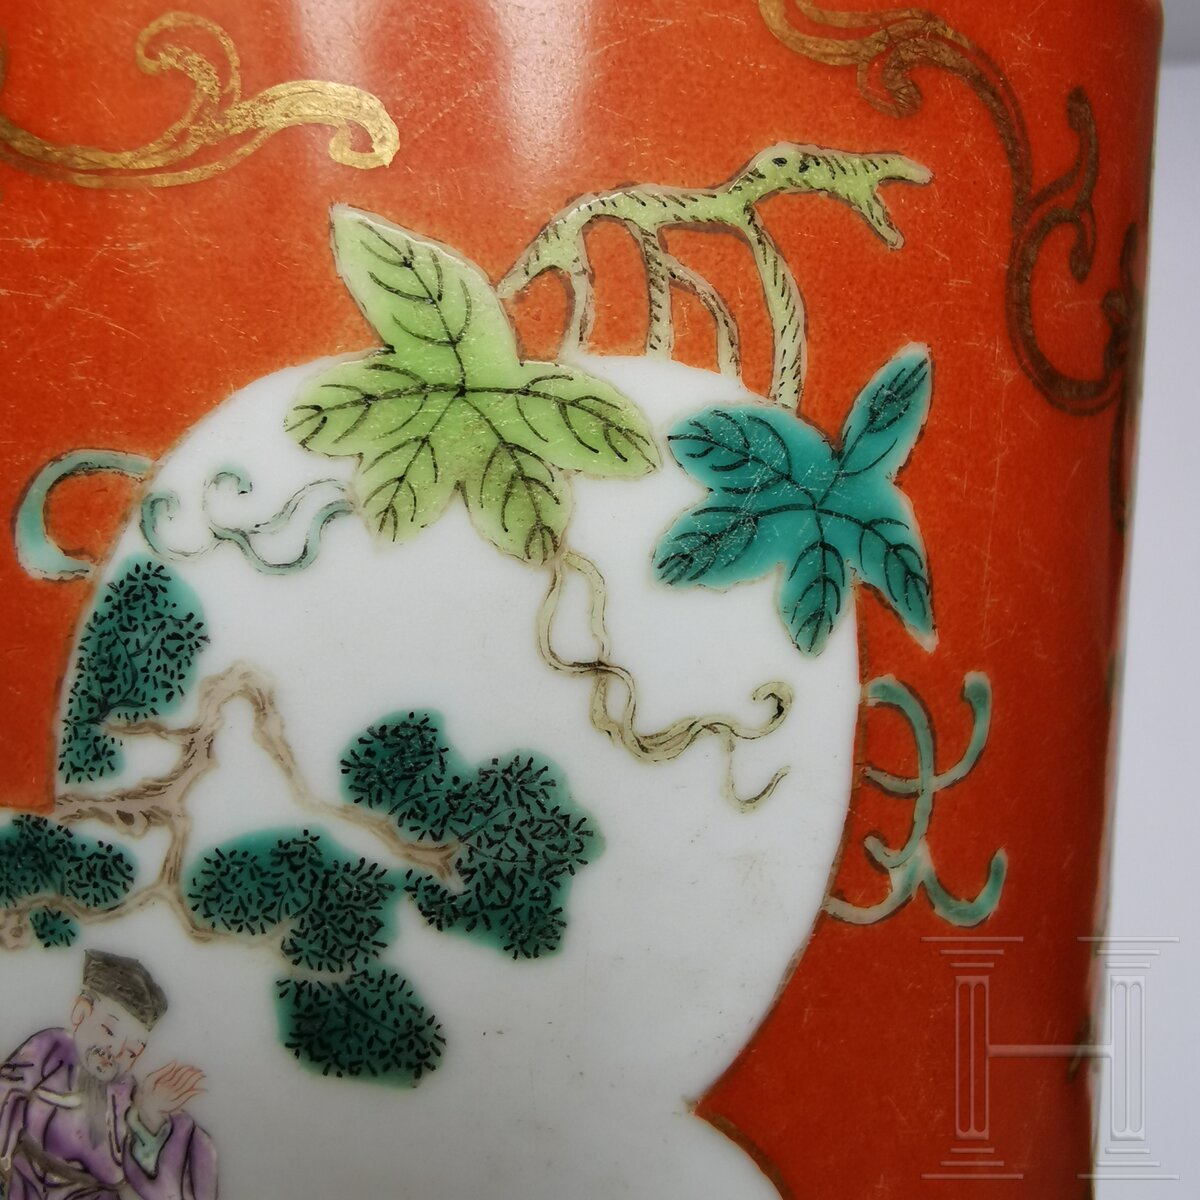 Korallenrot glasierter Famille-rose-Pinseltopf, China, wohl spätes 19. Jhdt. - Image 13 of 14